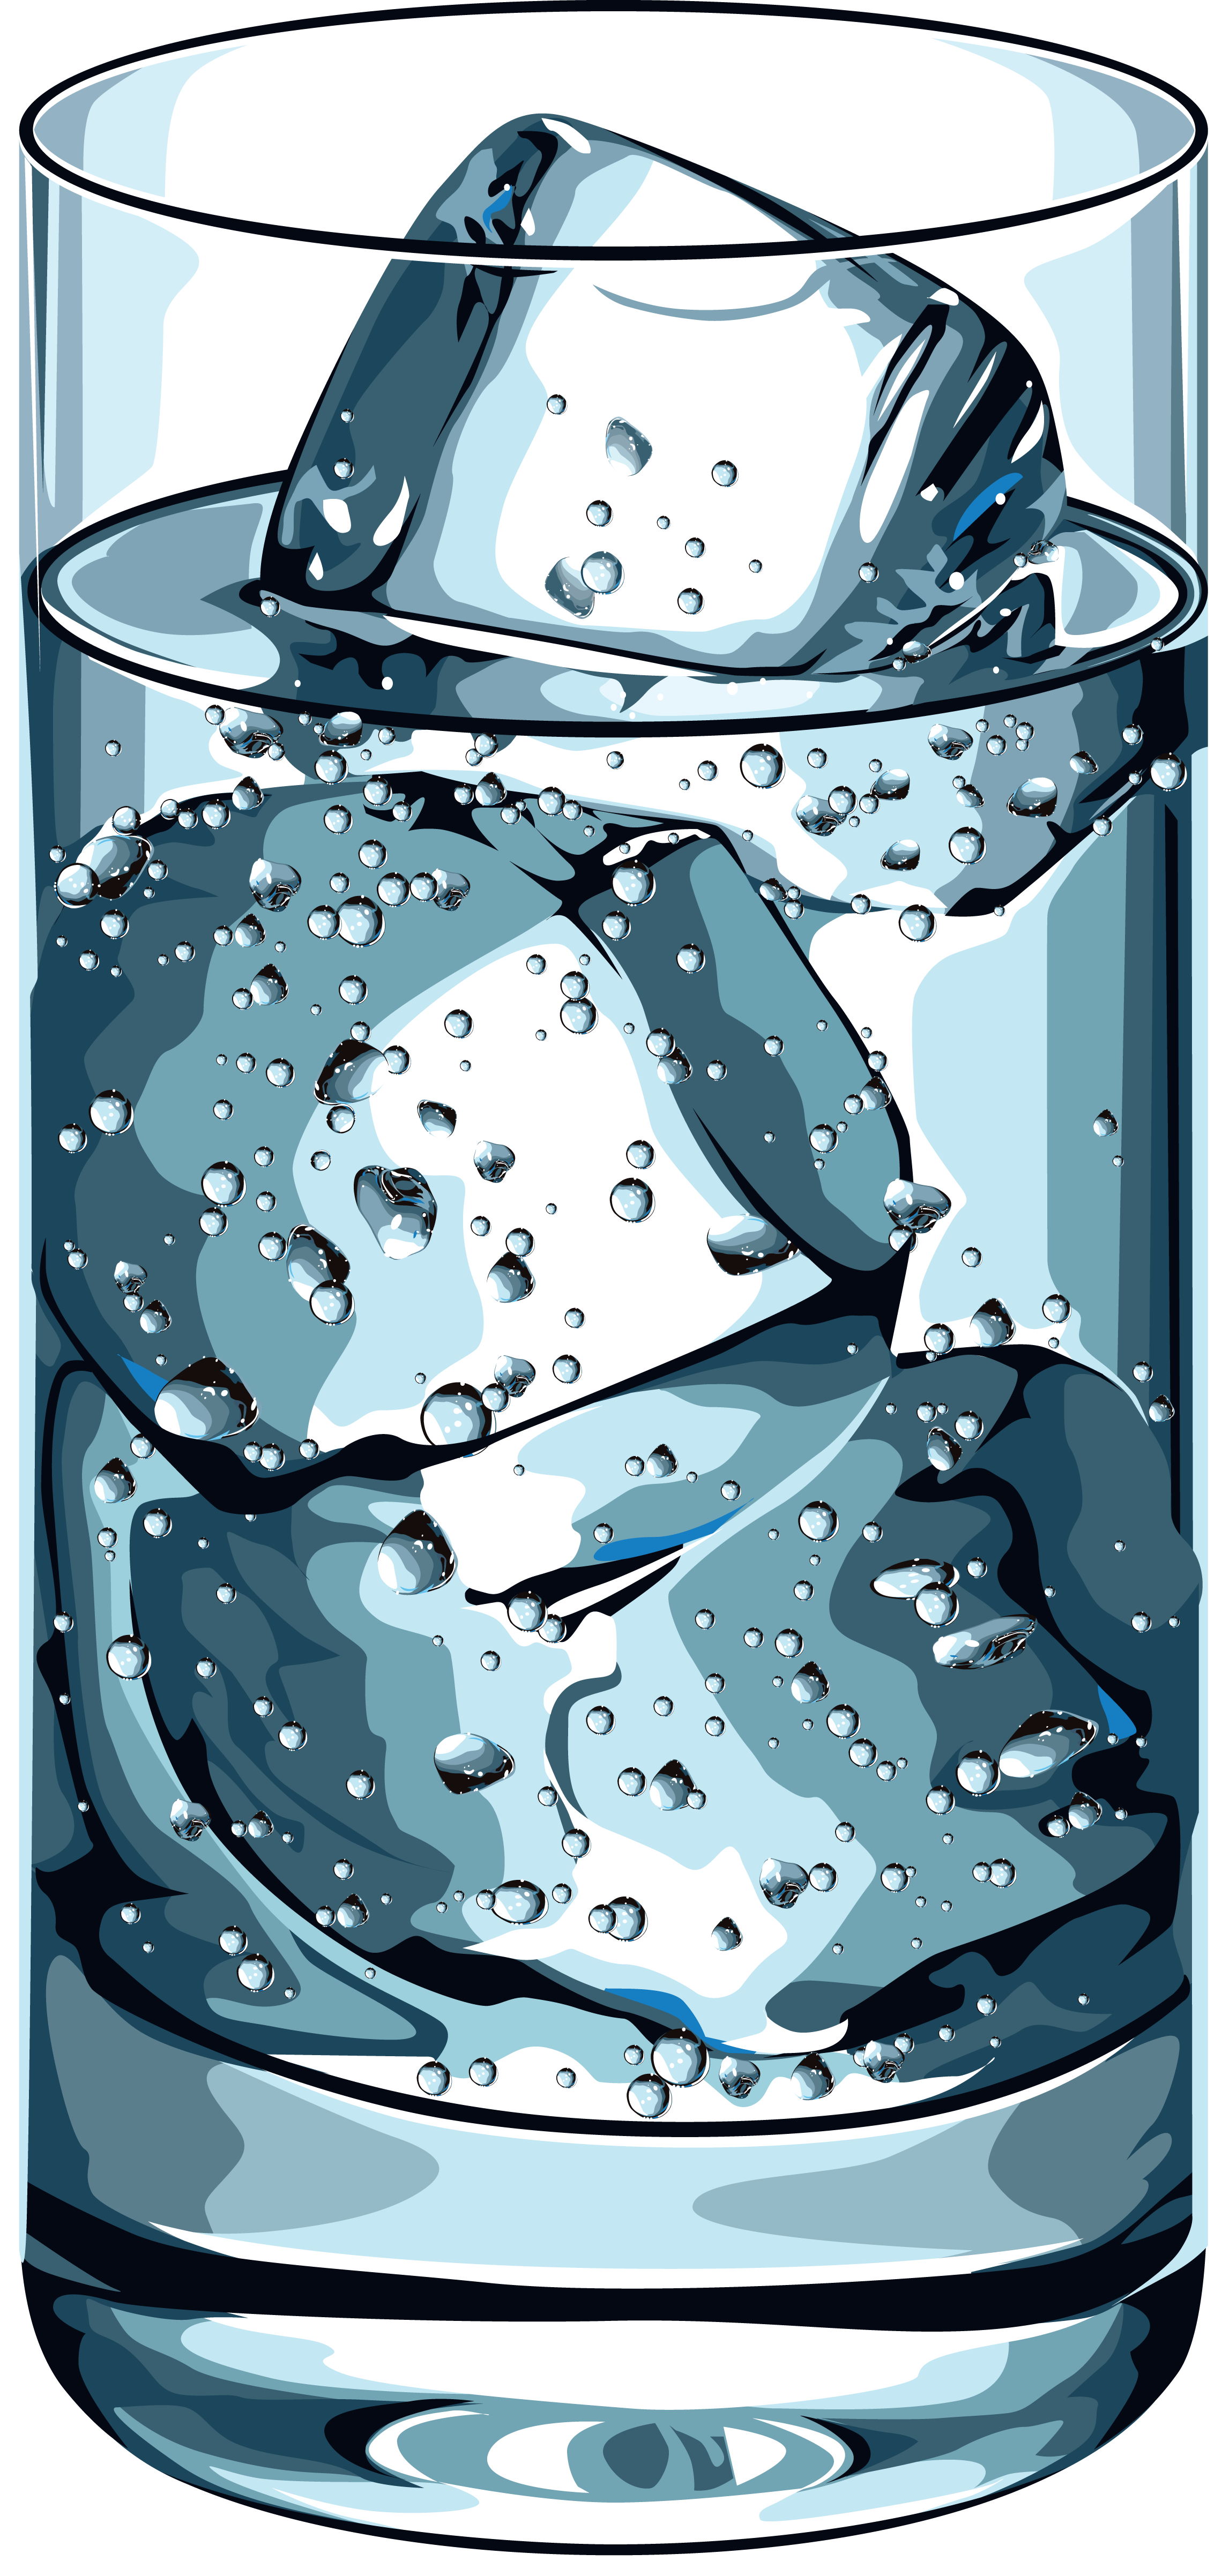 Bicchiere (riempito d'acqua)